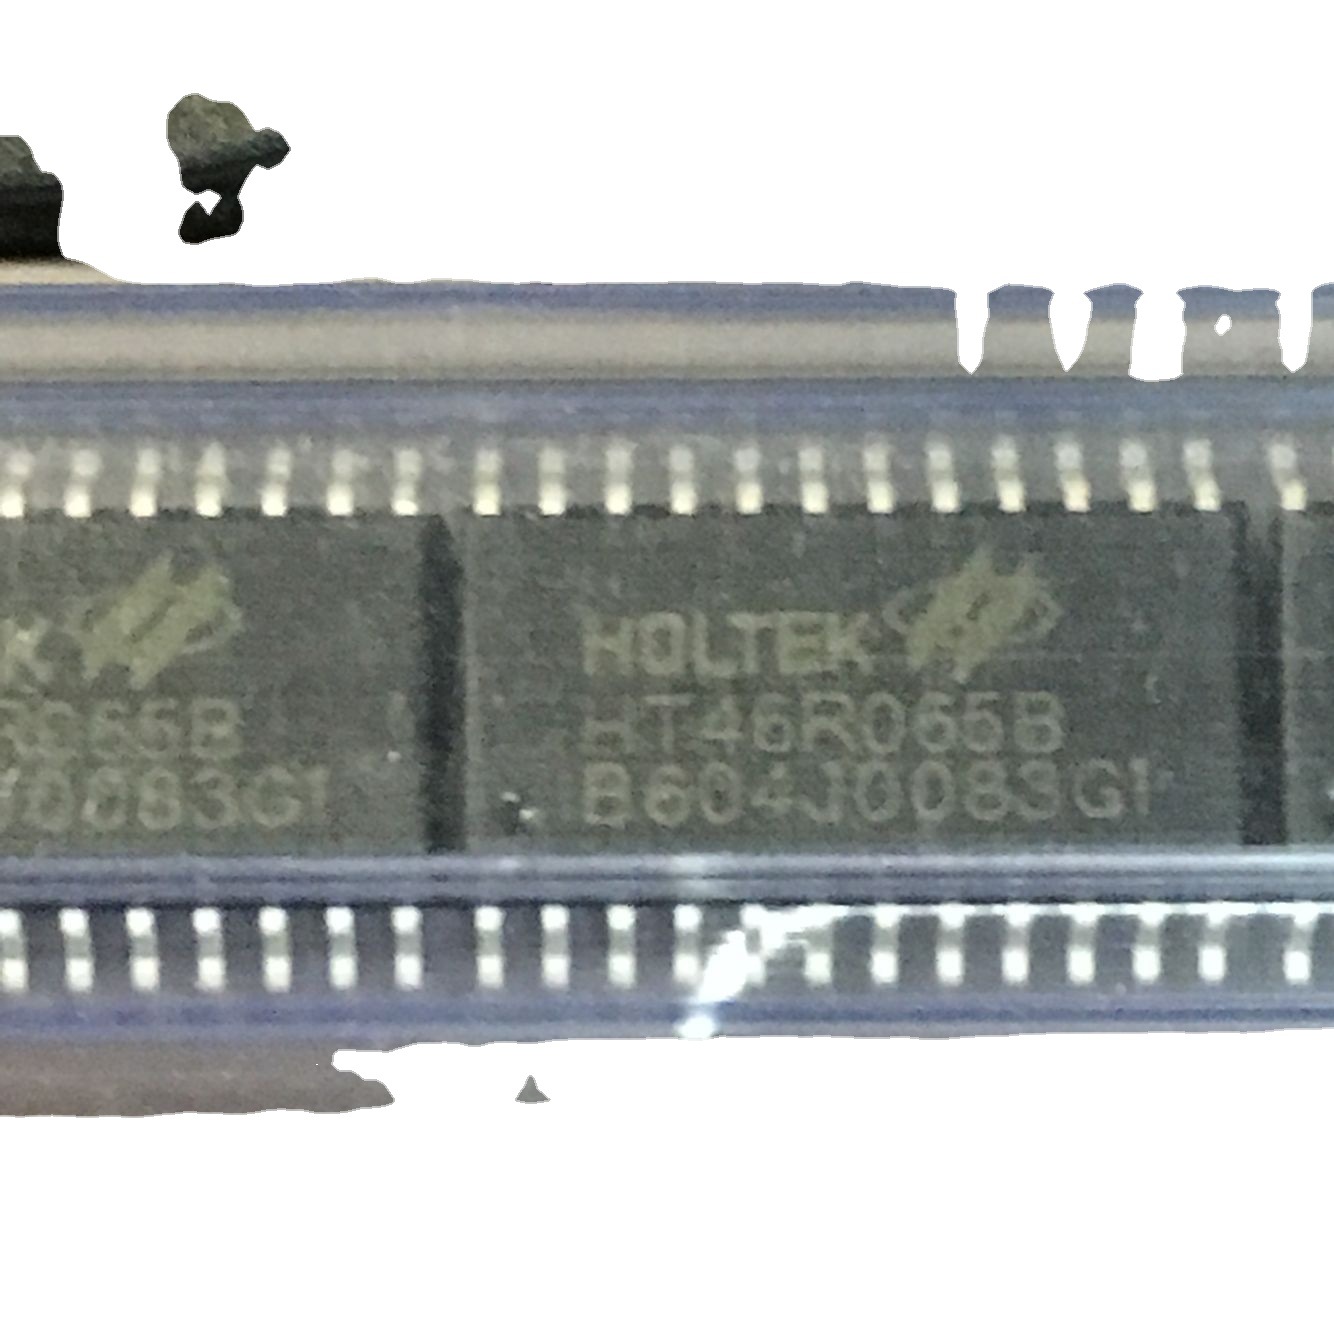 HT46R065B全糸列实体店批发 技术支持 附烧录器 IC座单片机